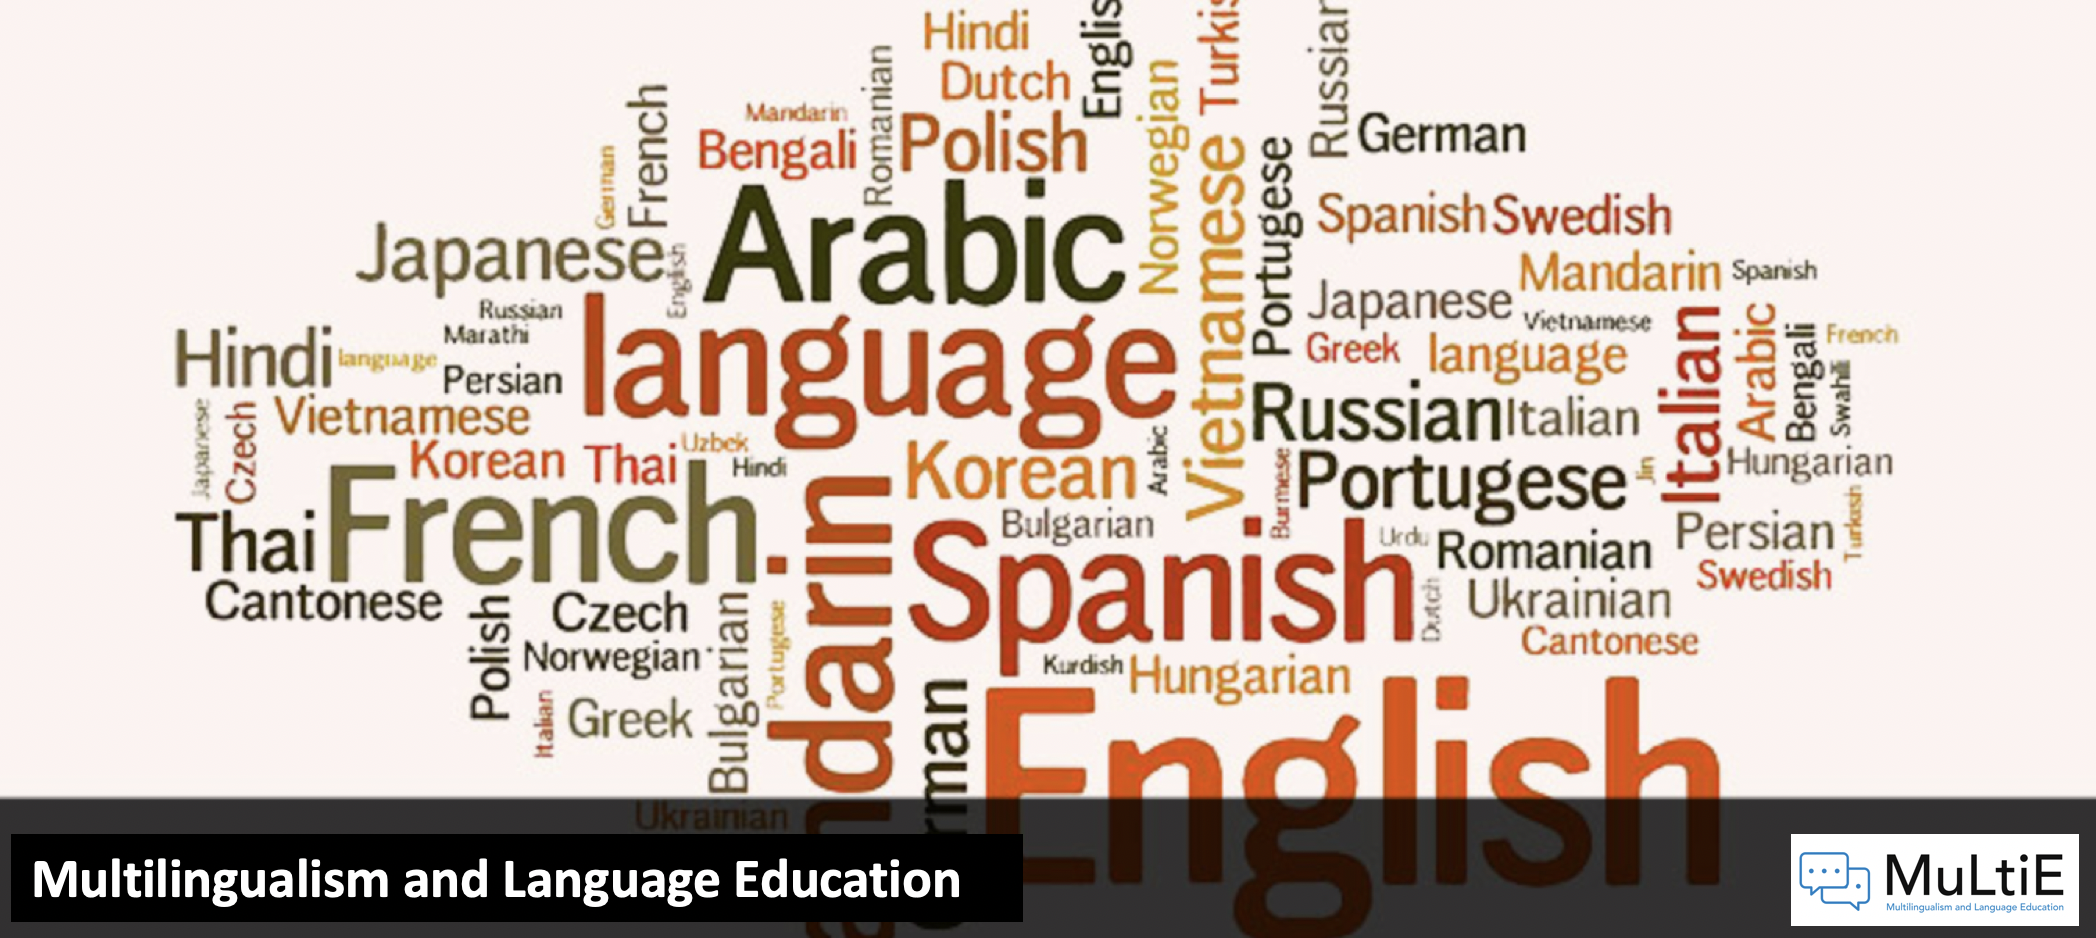 Image of languages wordle and headline Multilingualism and Languages Education